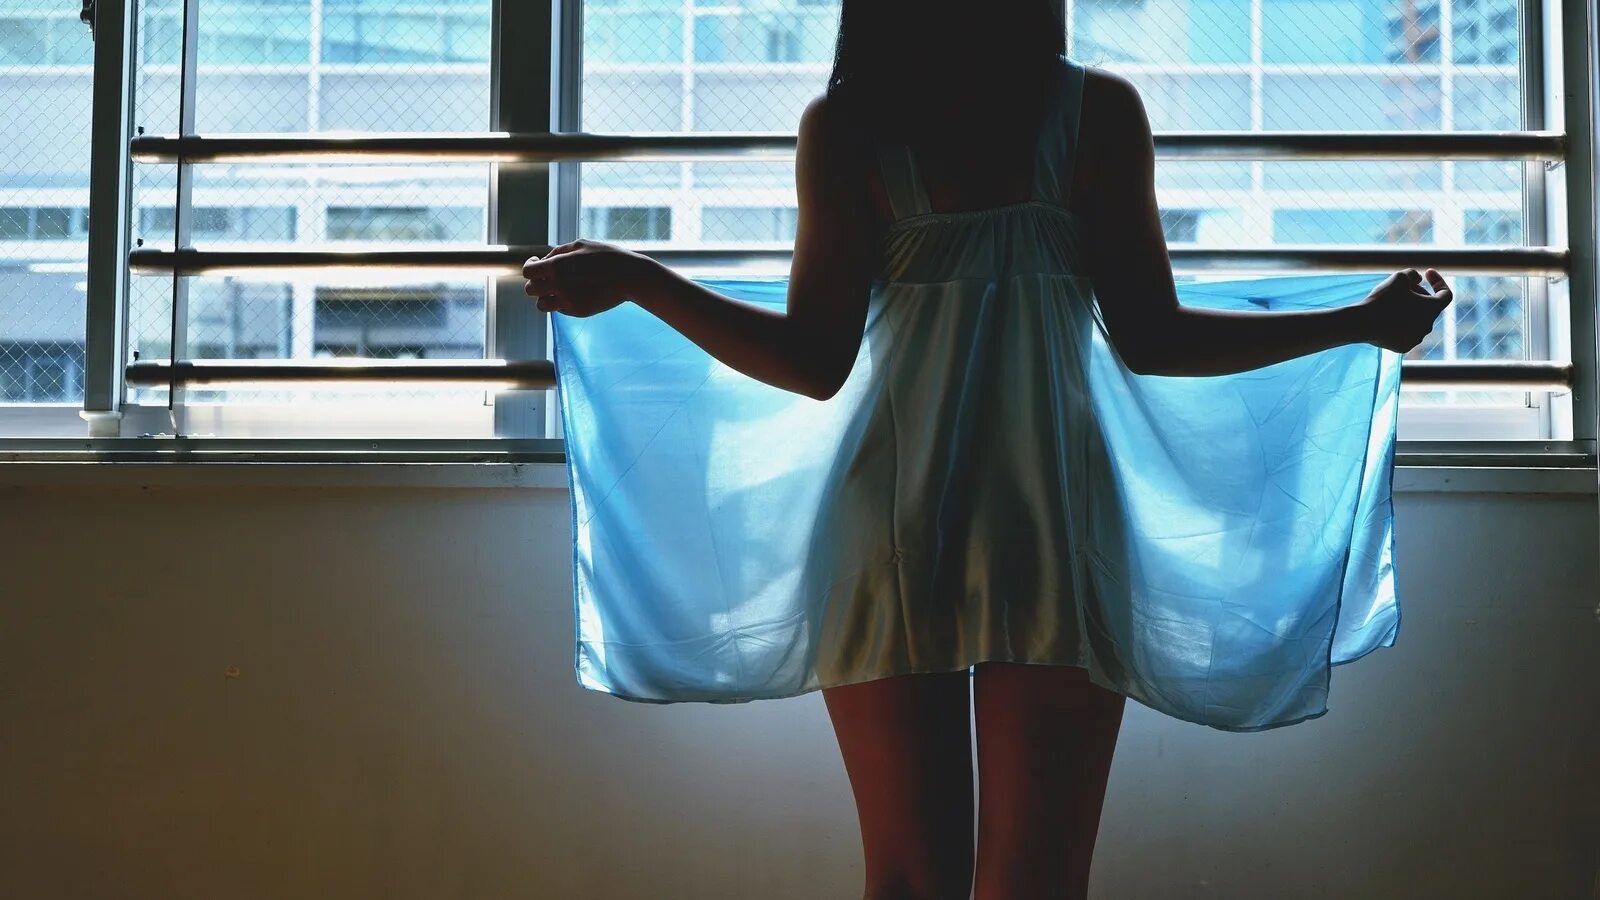 Девушка возле окна спиной. Девушка у окна со спины. Девушка у окна в полотенце. Девушка распахивает окно.